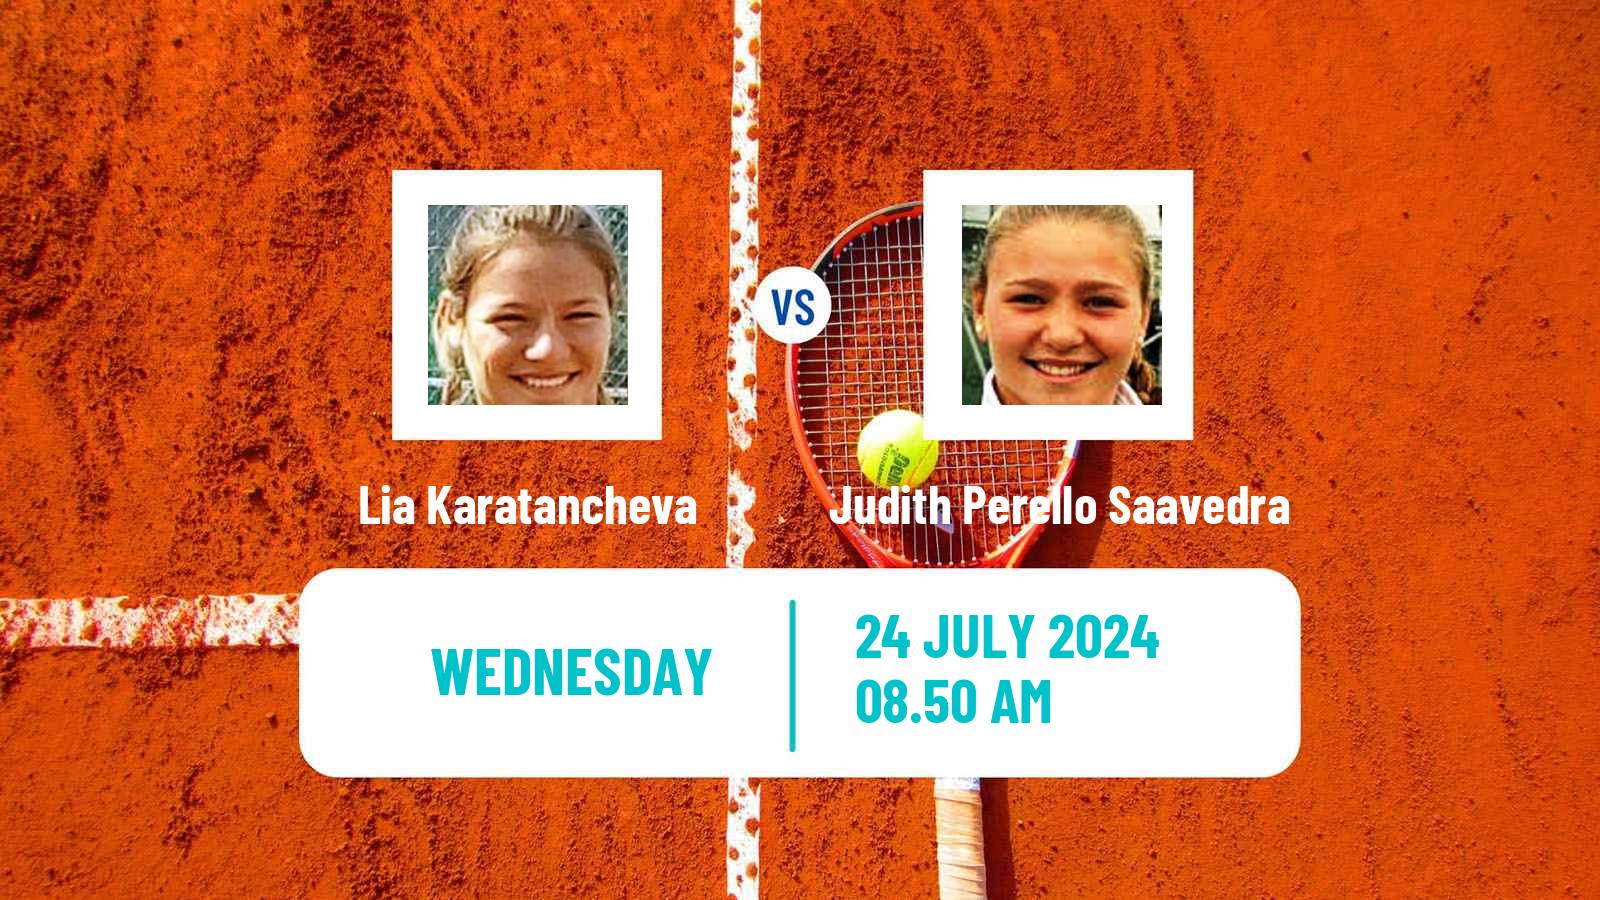 Tennis ITF W35 Segovia Women Lia Karatancheva - Judith Perello Saavedra